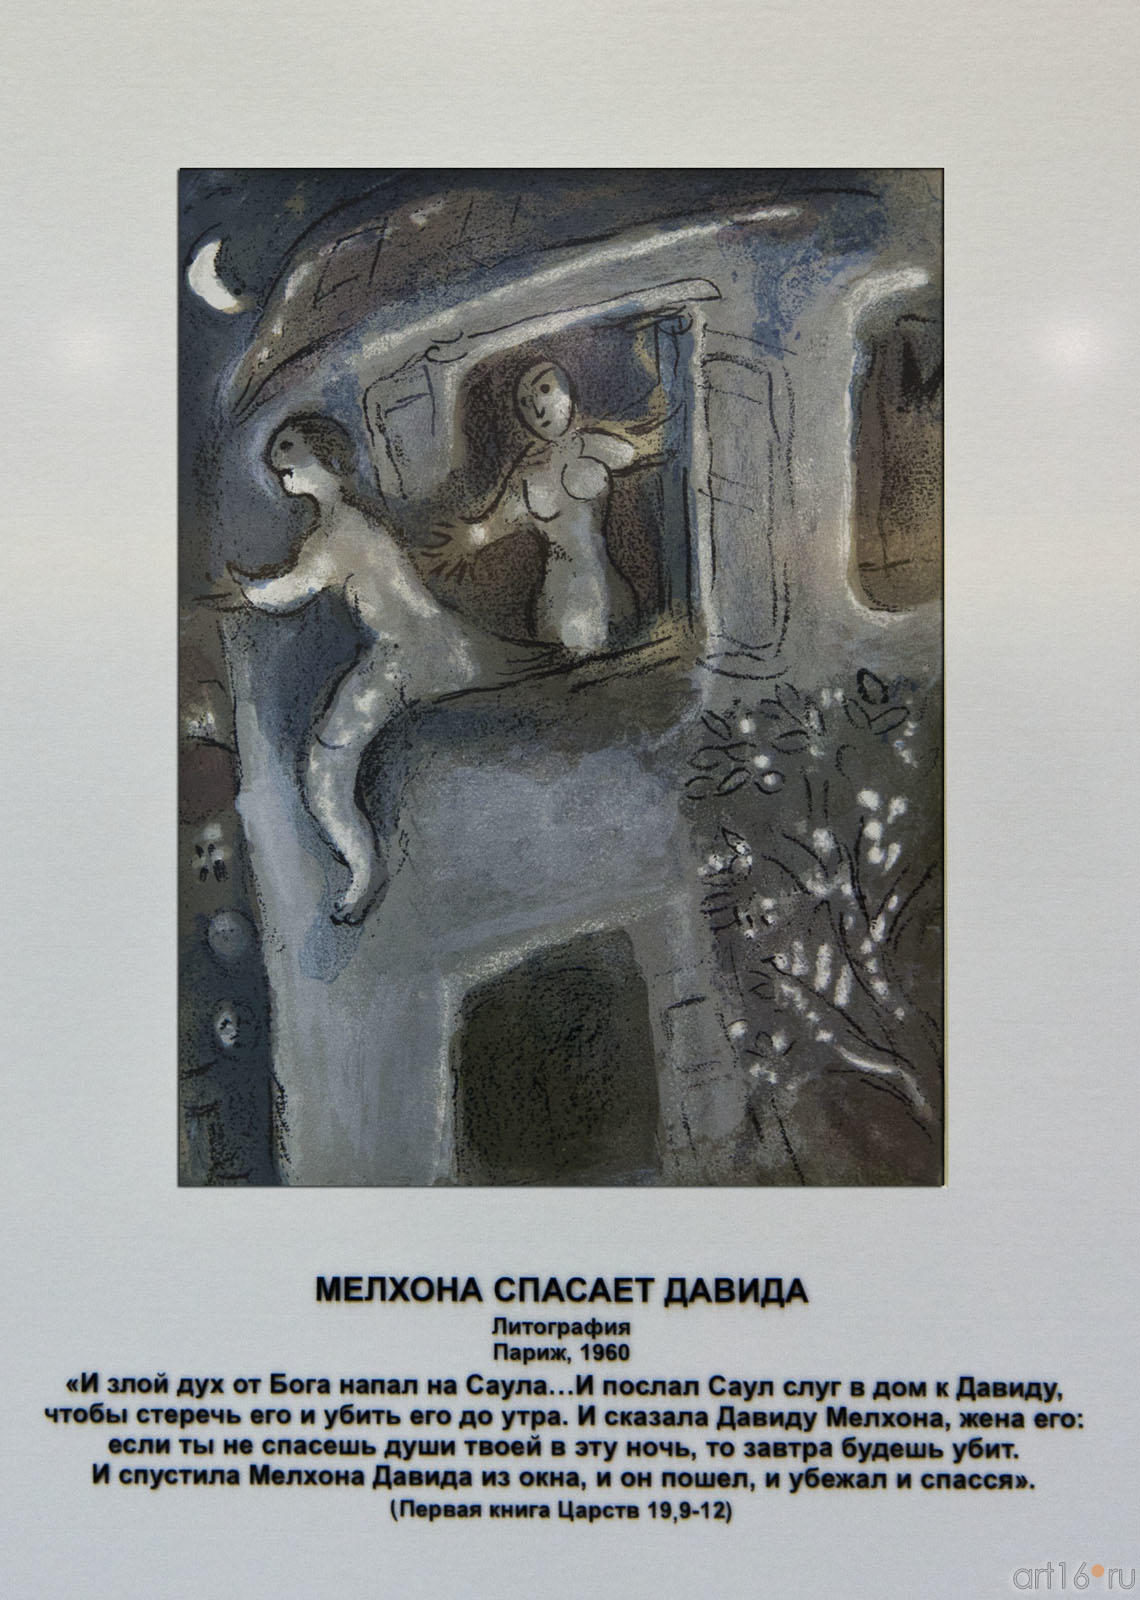 «Мелхона спасает Давида», Марк Шагал, литография, Париж, 1960::Марк Шагал «Библейские сюжеты»